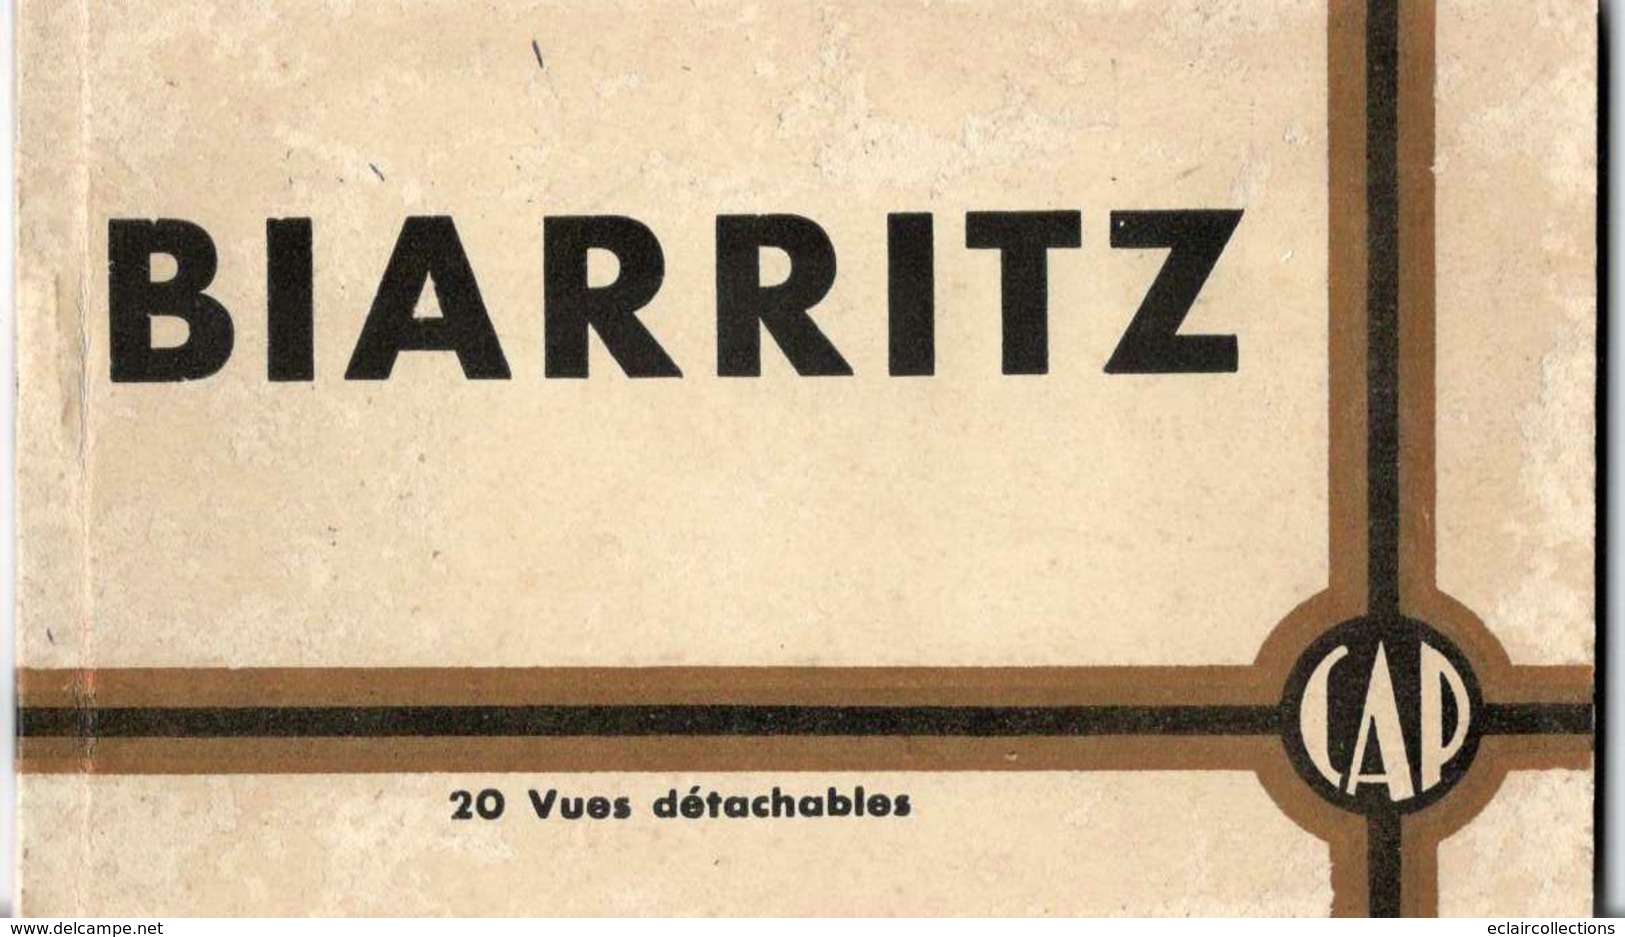 Biarritz    64     1 lot de 31 cartes... On joint 2 carnets de 20 cartes: Total 71 cartes   (voir scan)